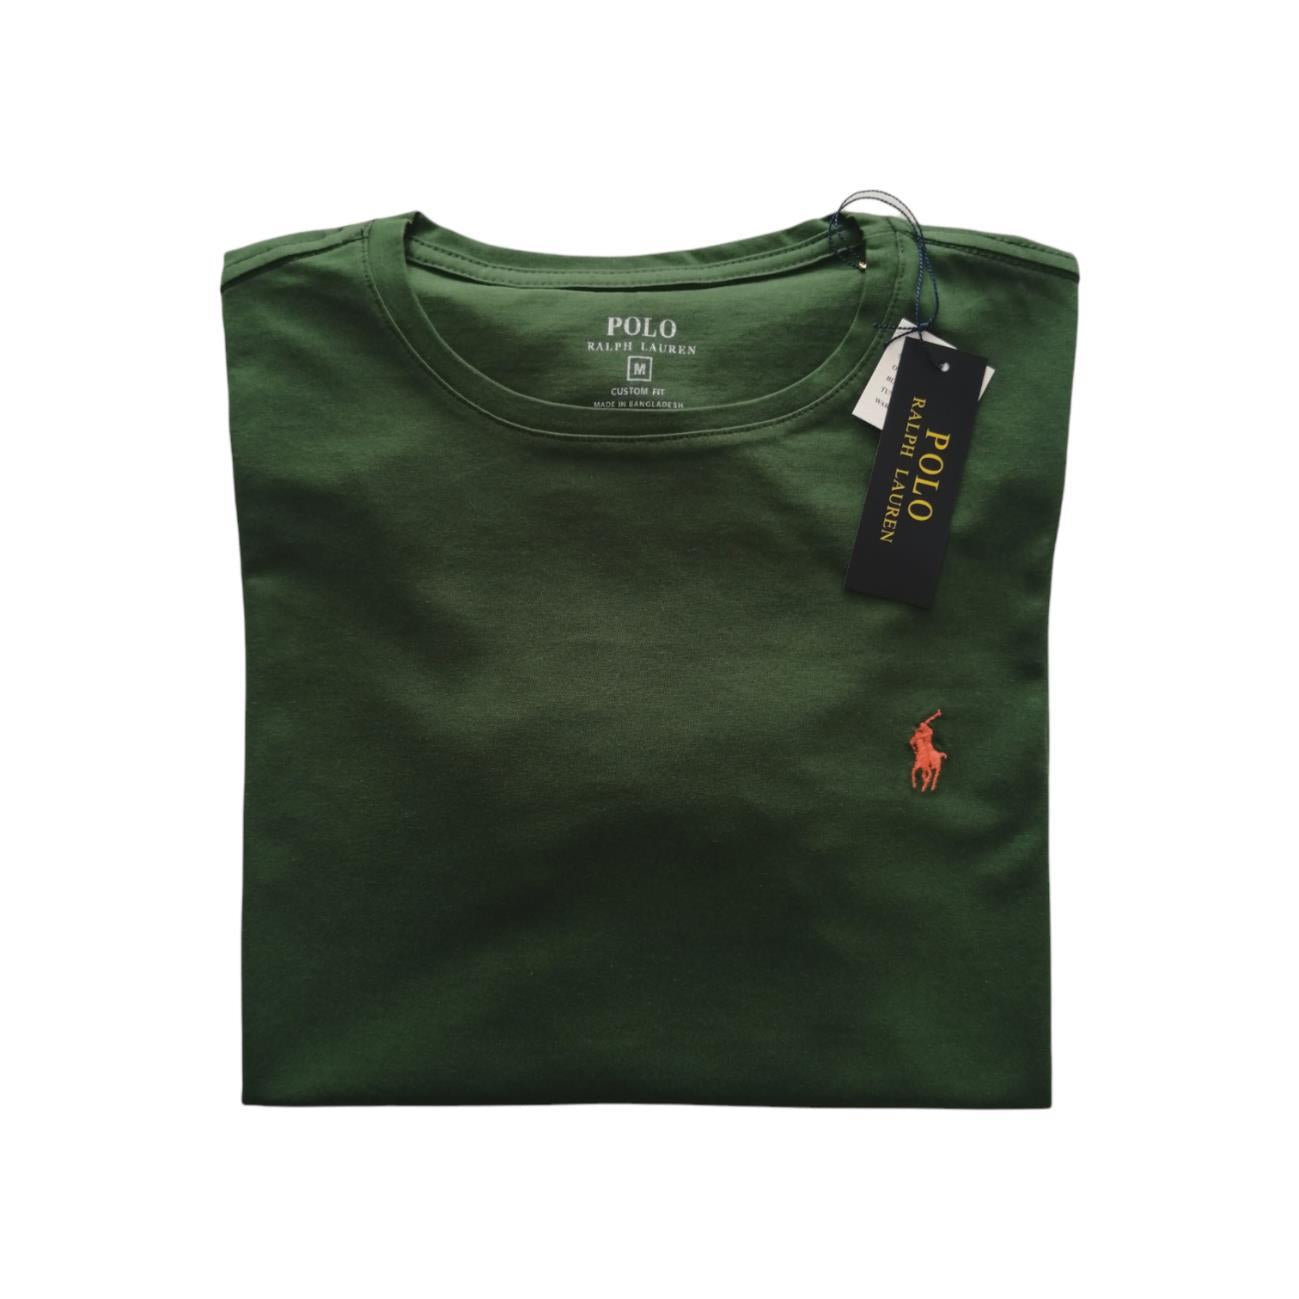 Camiseta cuello redondo manga corta color verde oliva Ralph Lauren